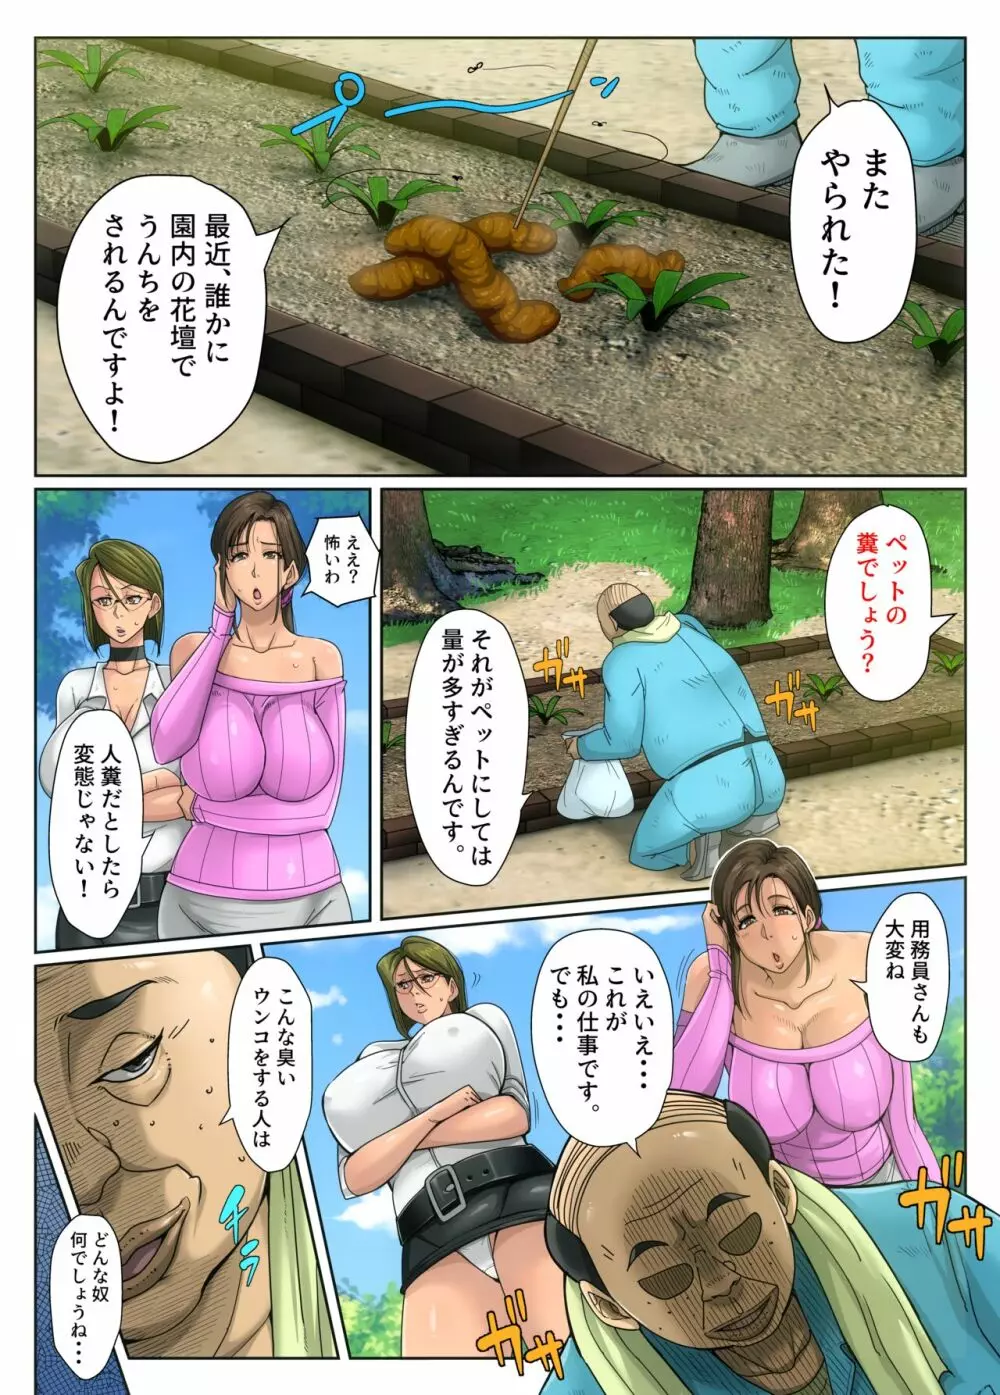 ゲスママ不貞日記1 栗山リサ編 - page4